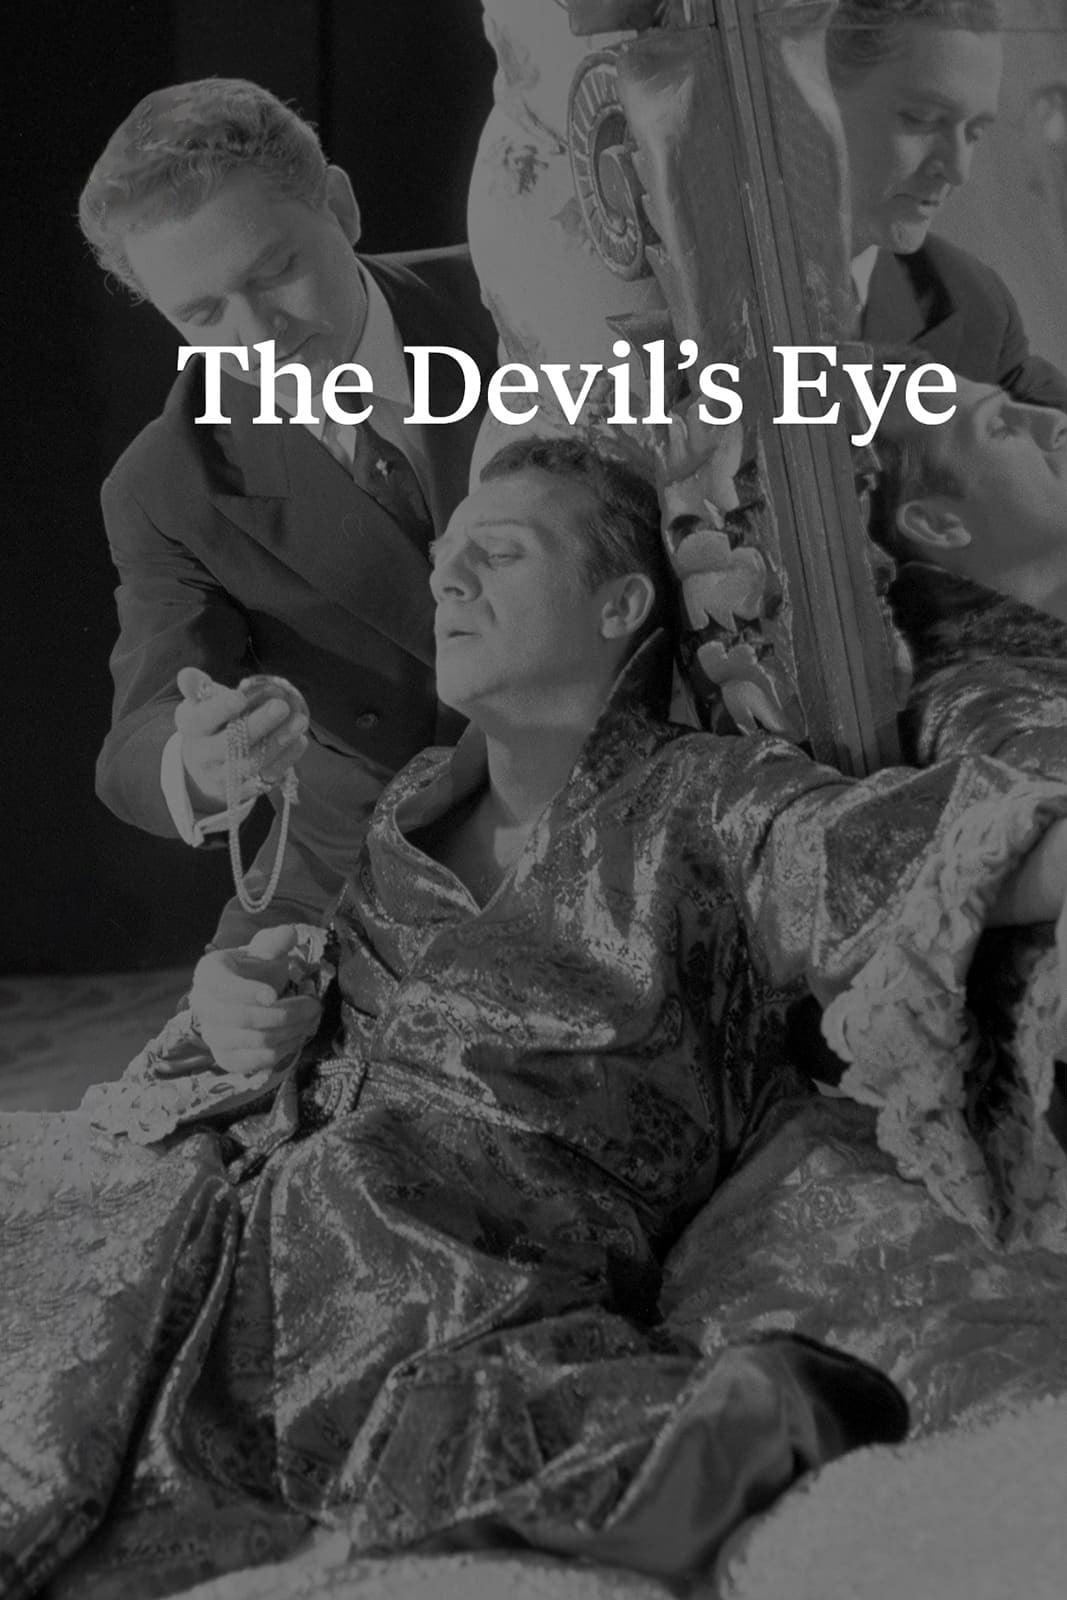 The Devil's Eye poster